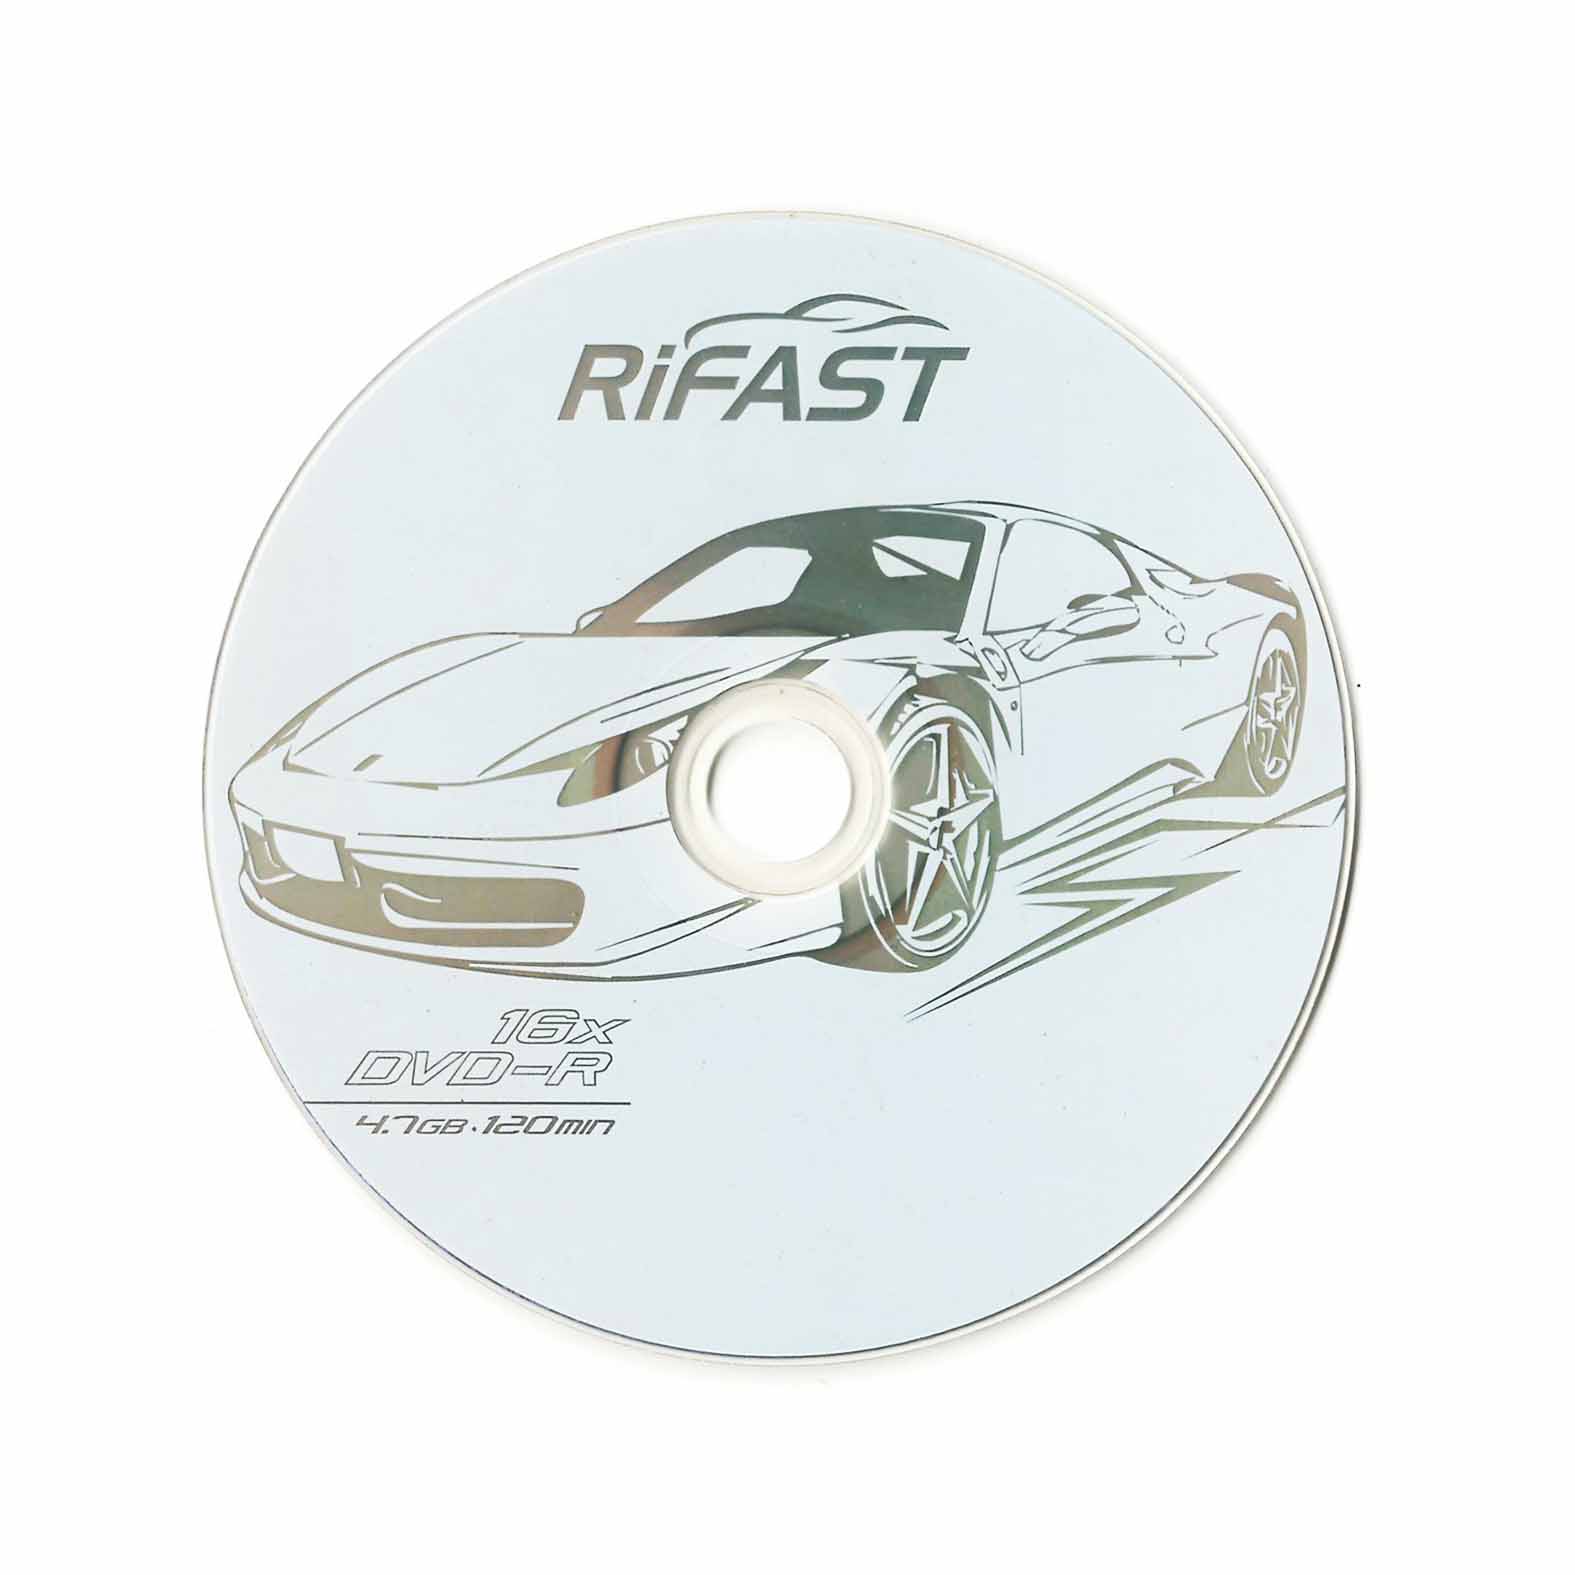 rifast-02